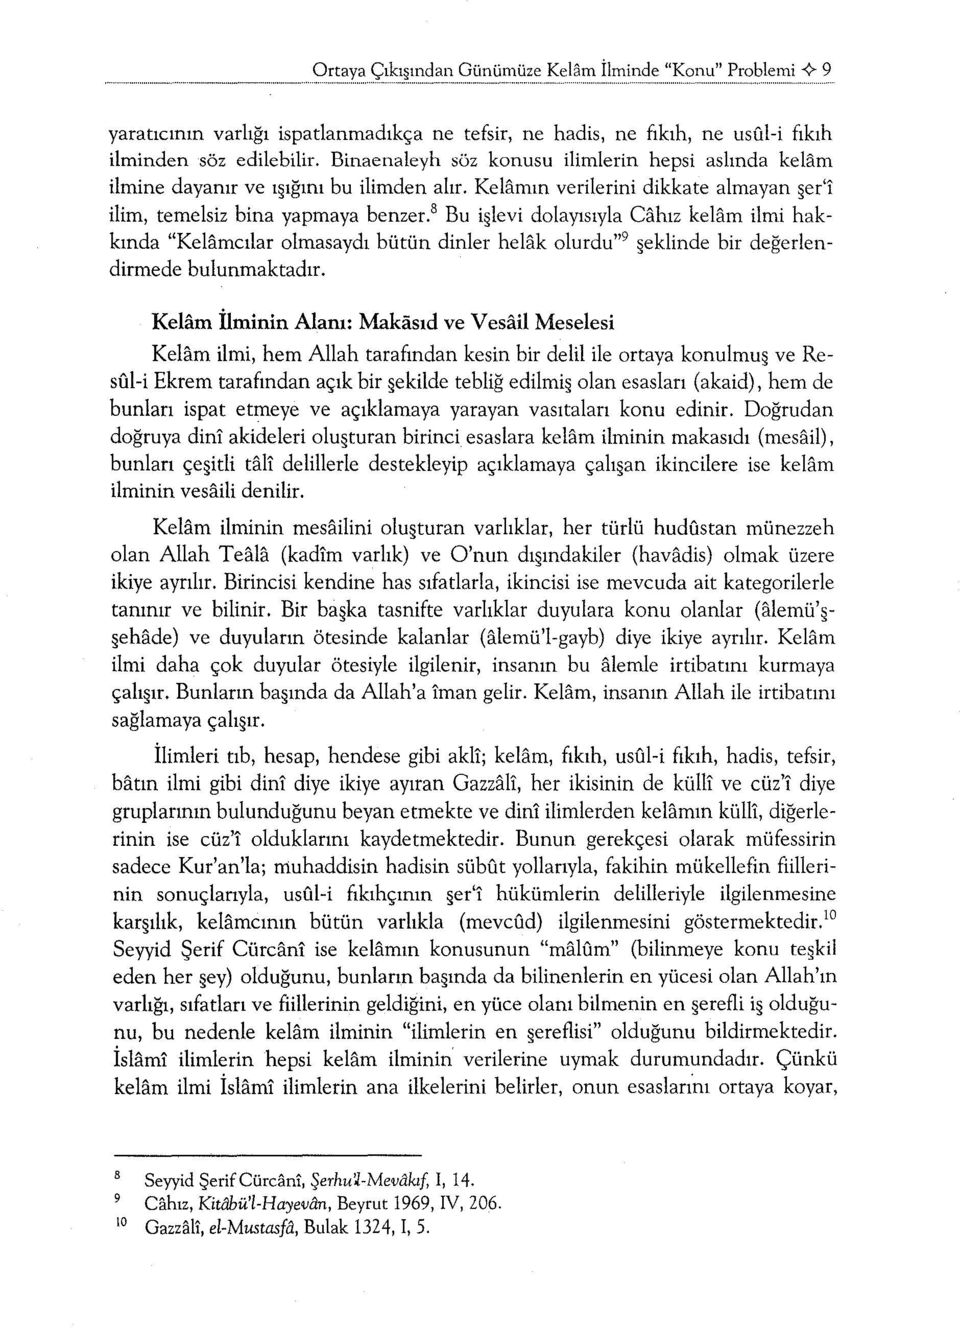 8 Bu i levi dolayısıyla Cahız kelam ilmi hakkında "Kelamcılar olmasaydı bütün dinler helak olurdu" 9 eklinde bir değerlendirmede bulunmaktadır.